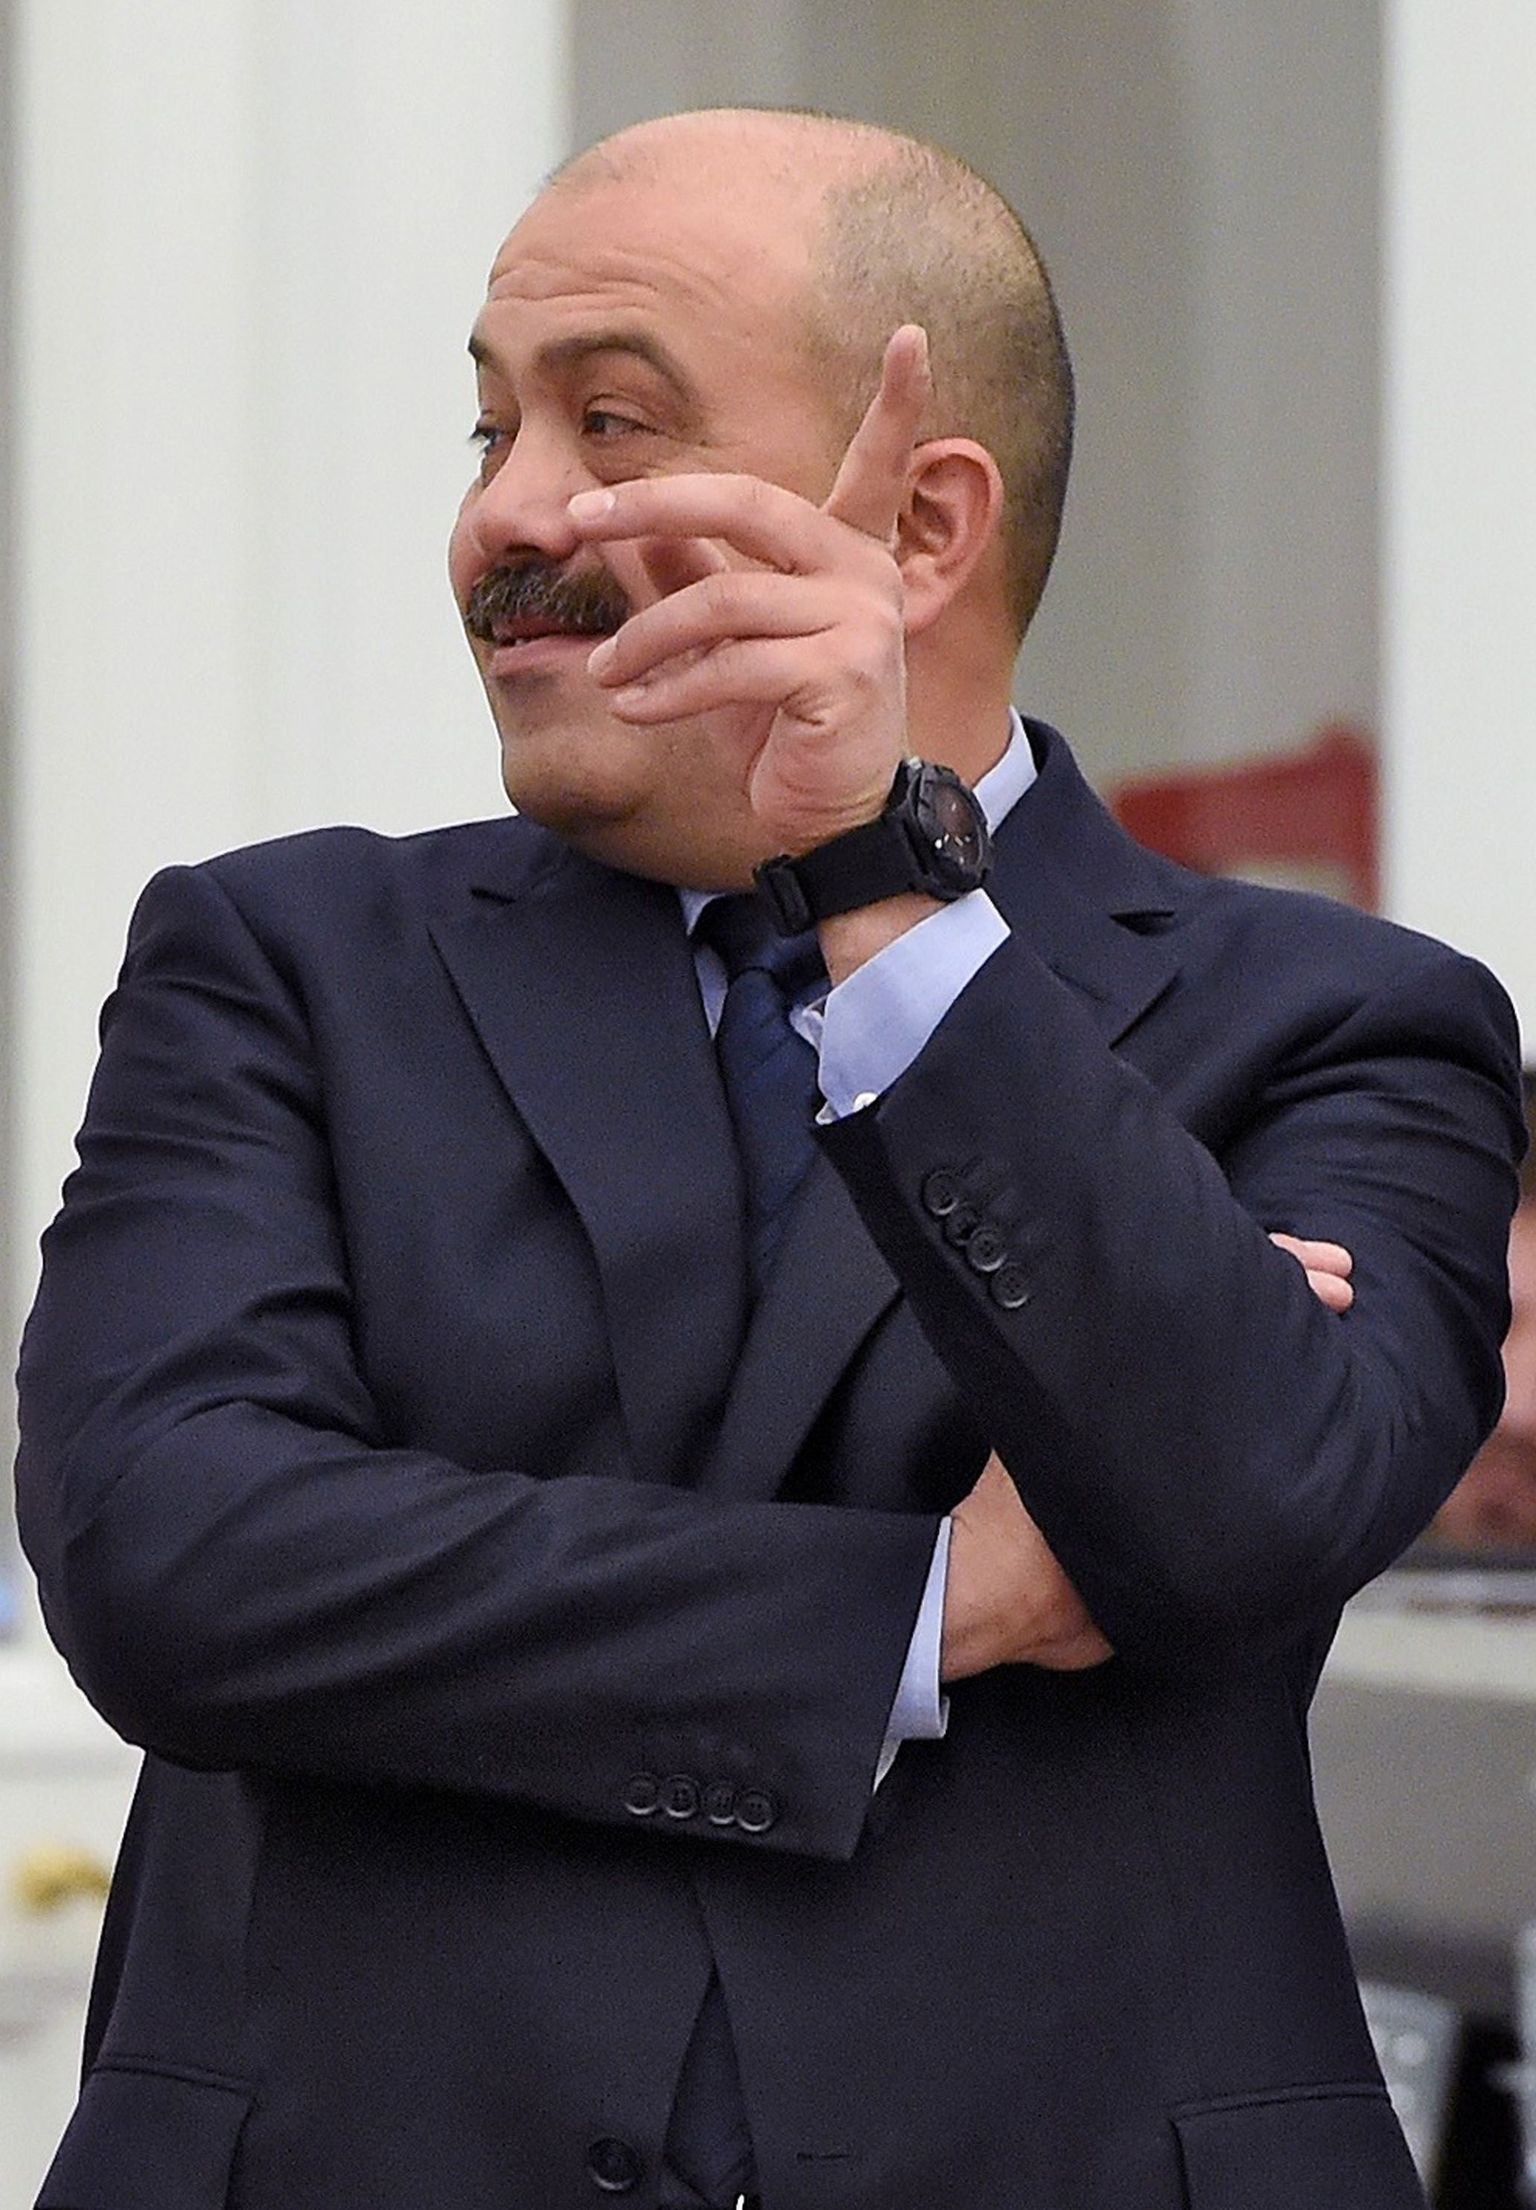 Искандер Махмудов 19 декабря 2014 года на встрече крупных предпринимателей с президентом России Владимиром Путиным.